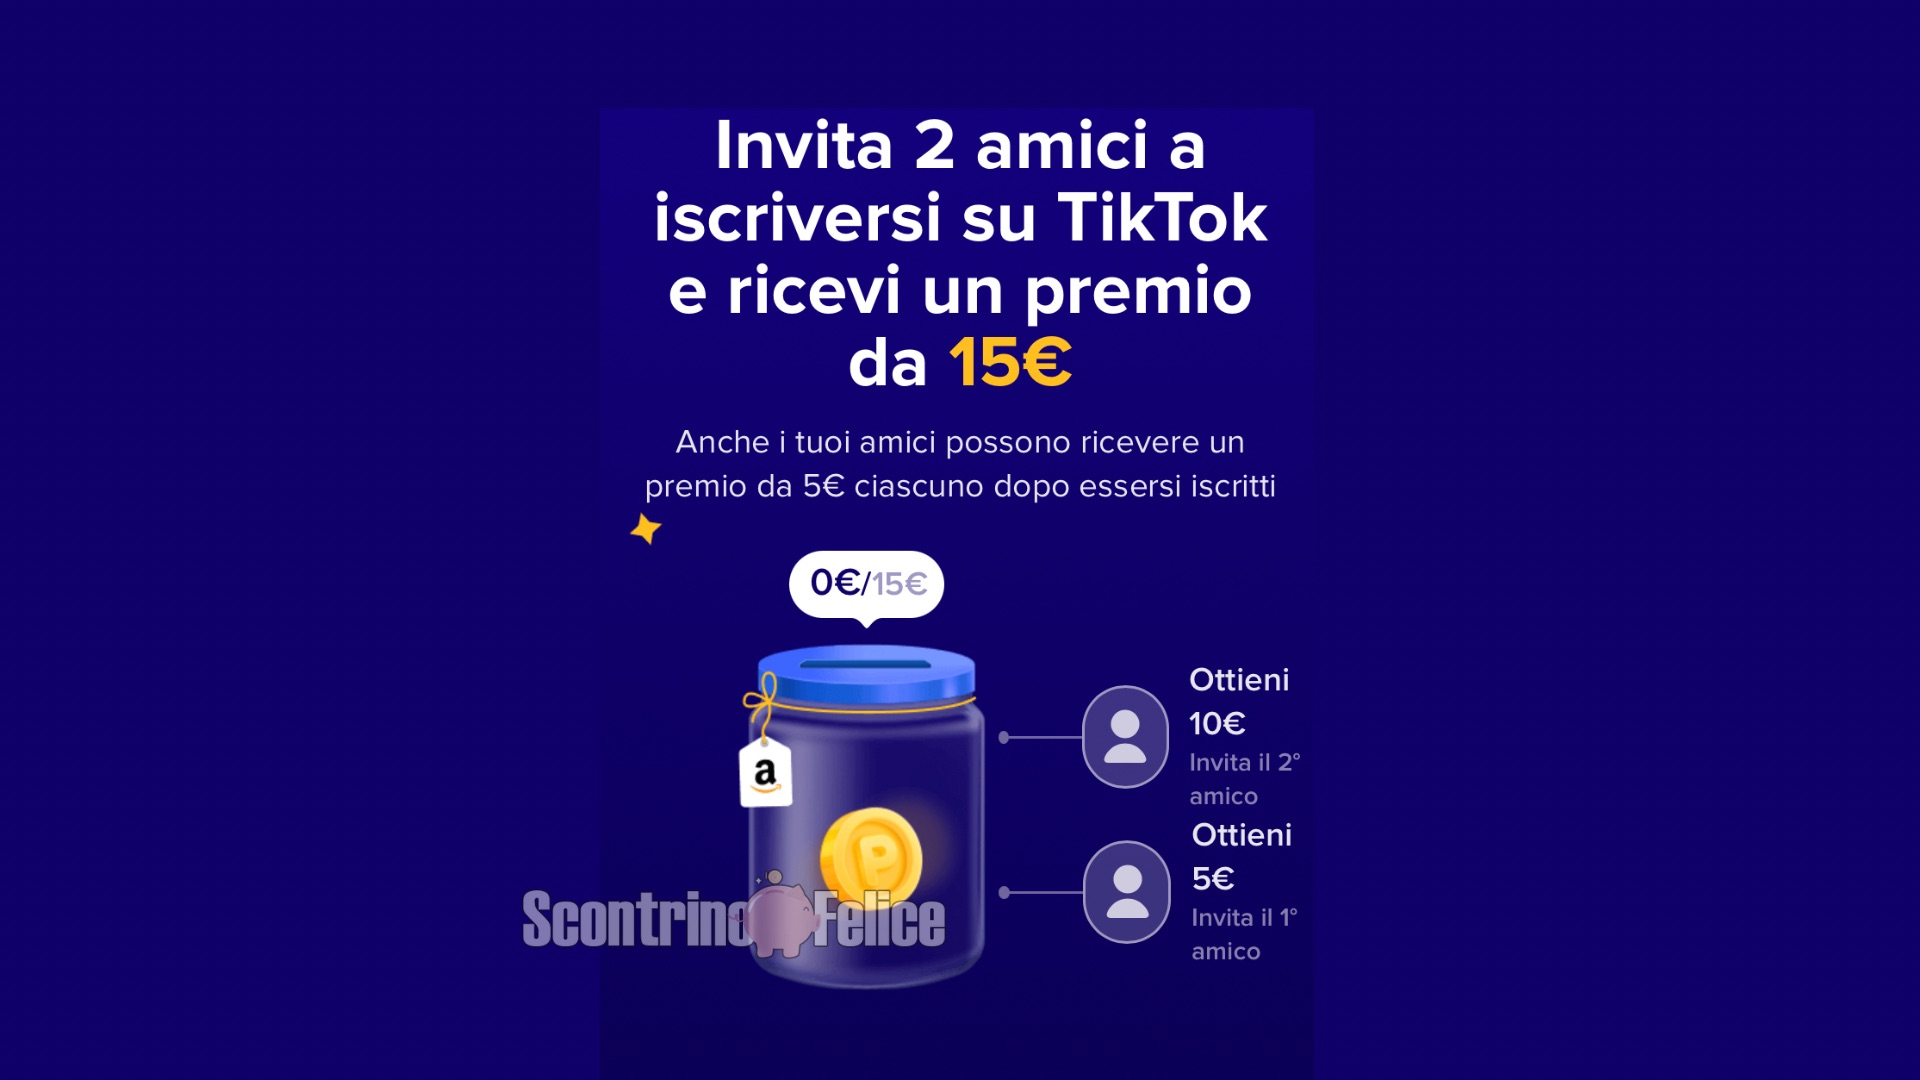 Tik Tok: invita 2 amici e guadagna 15 euro Amazon! 3